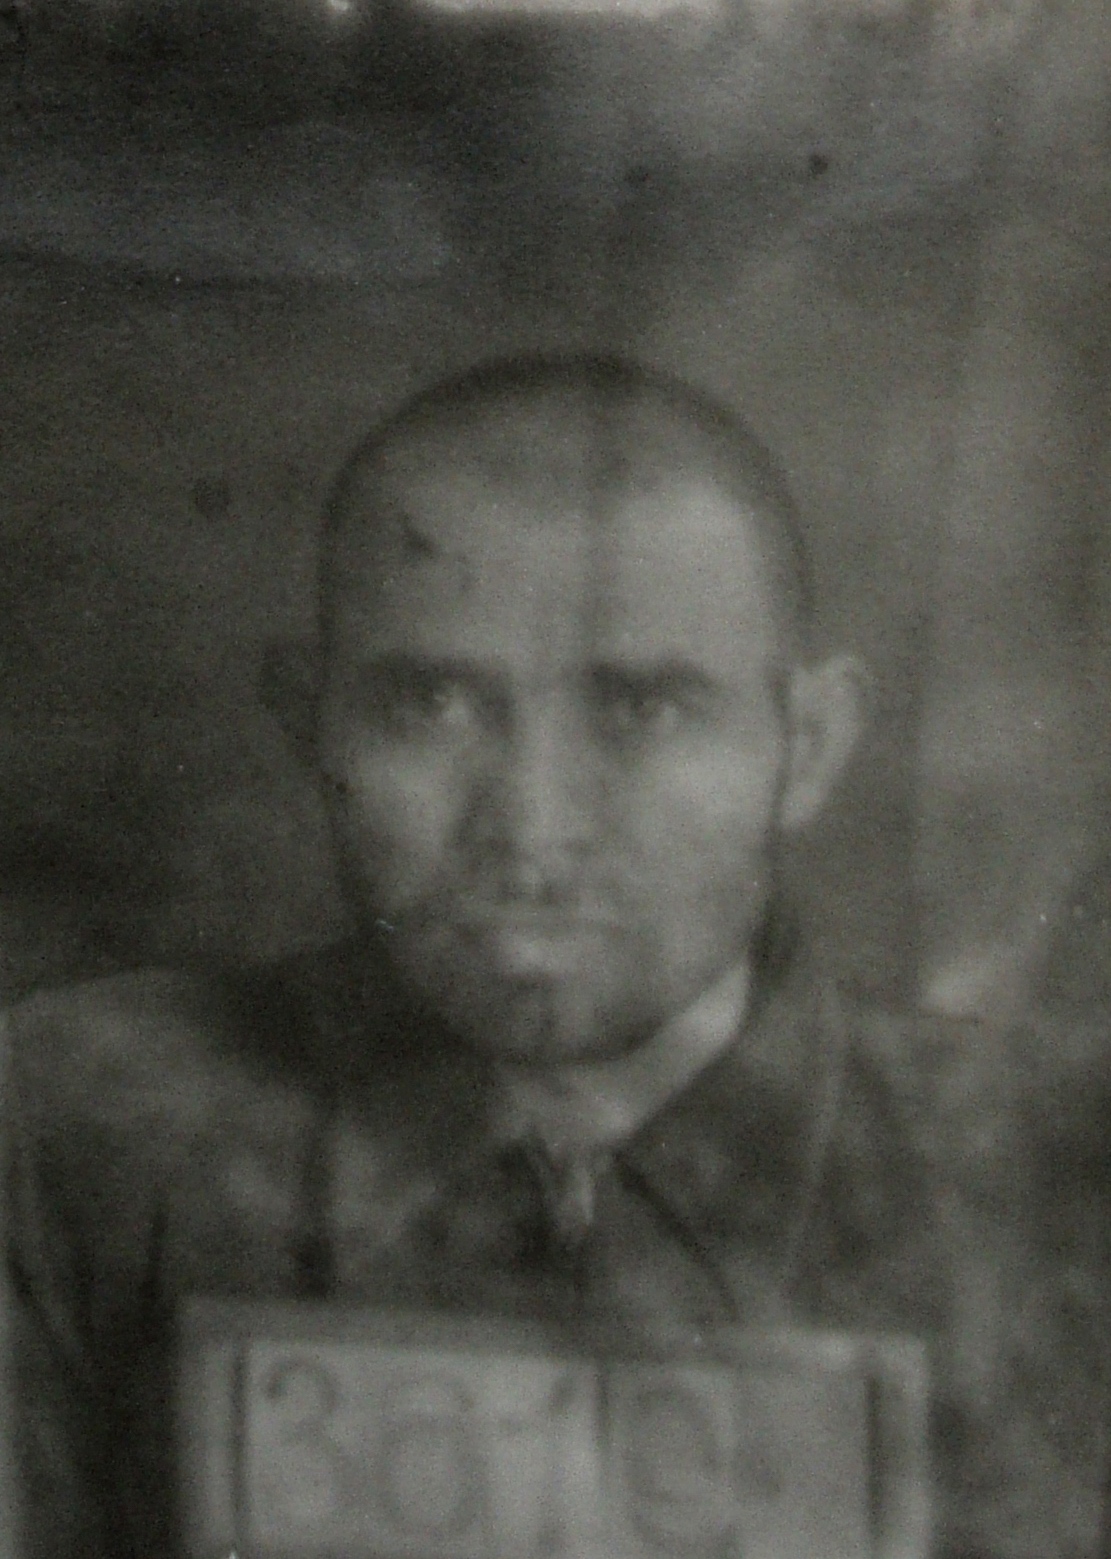 Šakiras Sadygovas. Nuotraukos iš LYA fondų